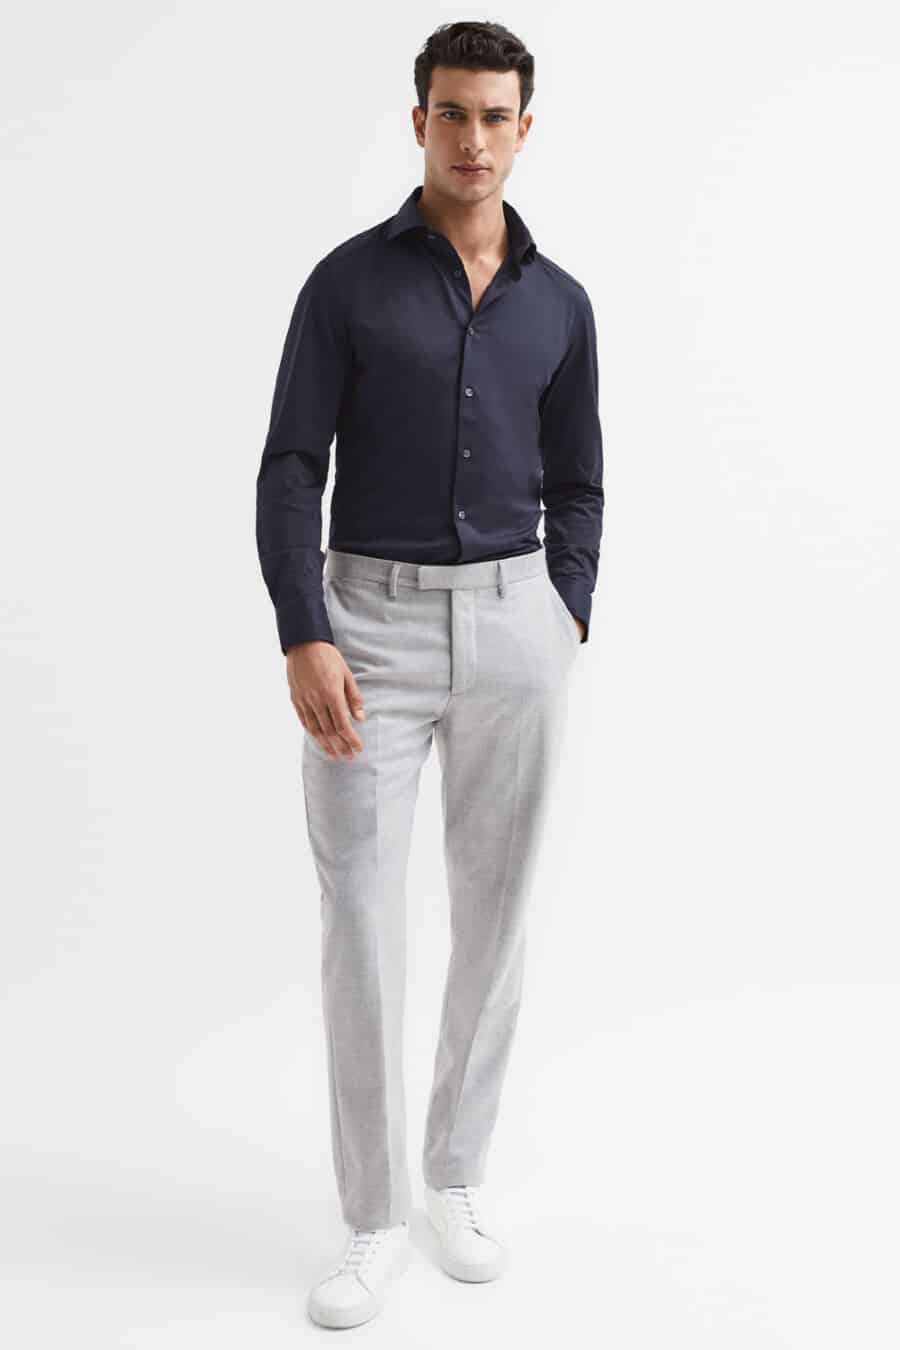 NavyBlue Shirt  Grey Pant  Blue shirt grey pants Grey pants Blue shirt